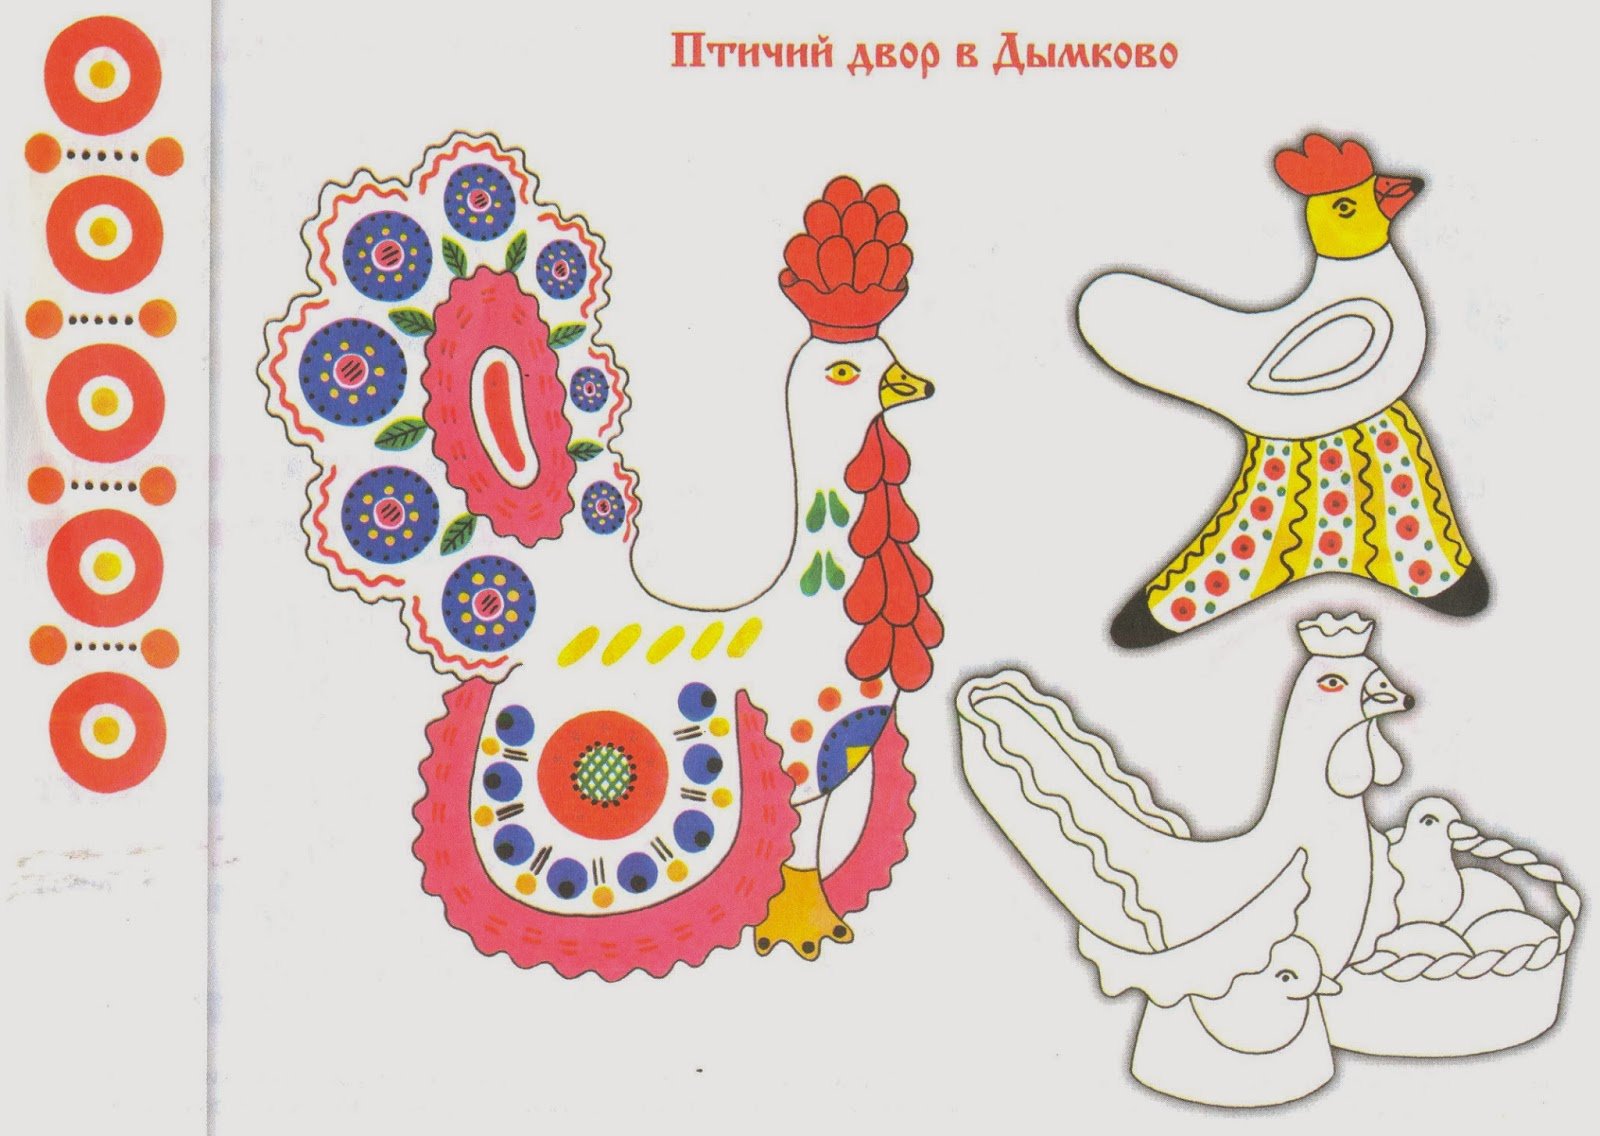 Раскраска индюка для дымковской росписи